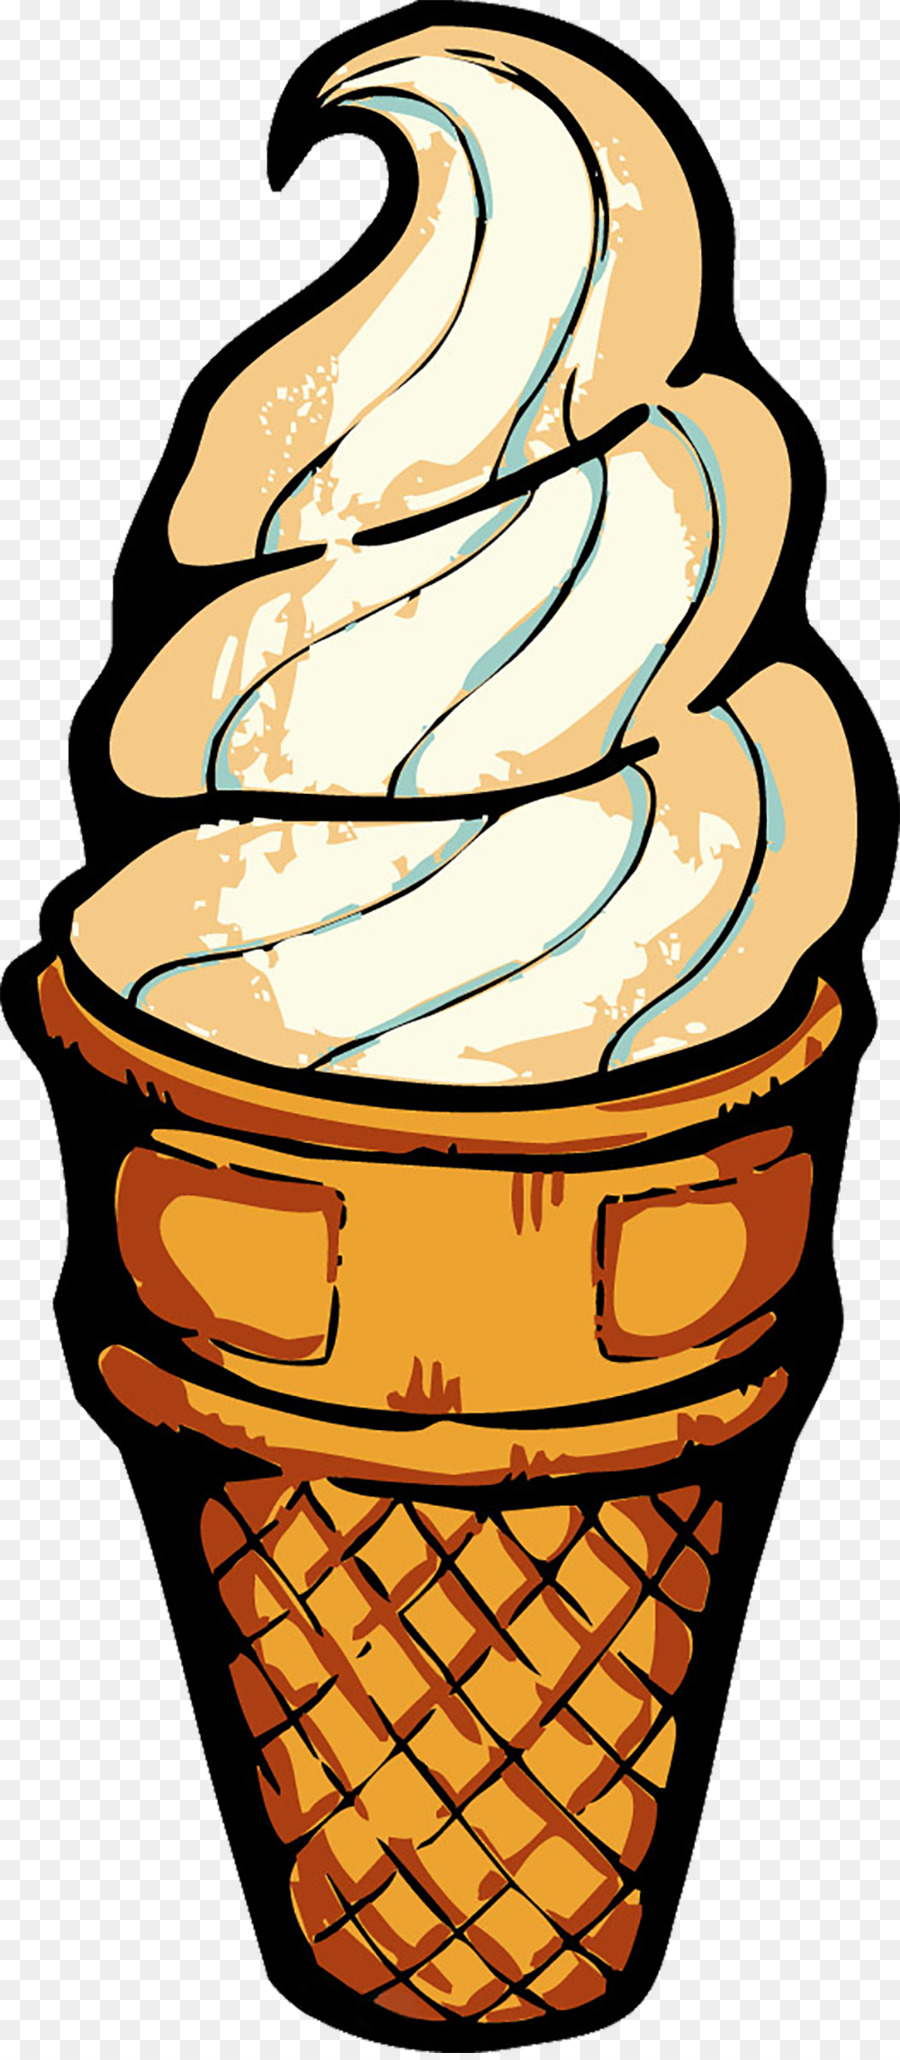 Ice cream cone Illustration - Cartoon ice cream